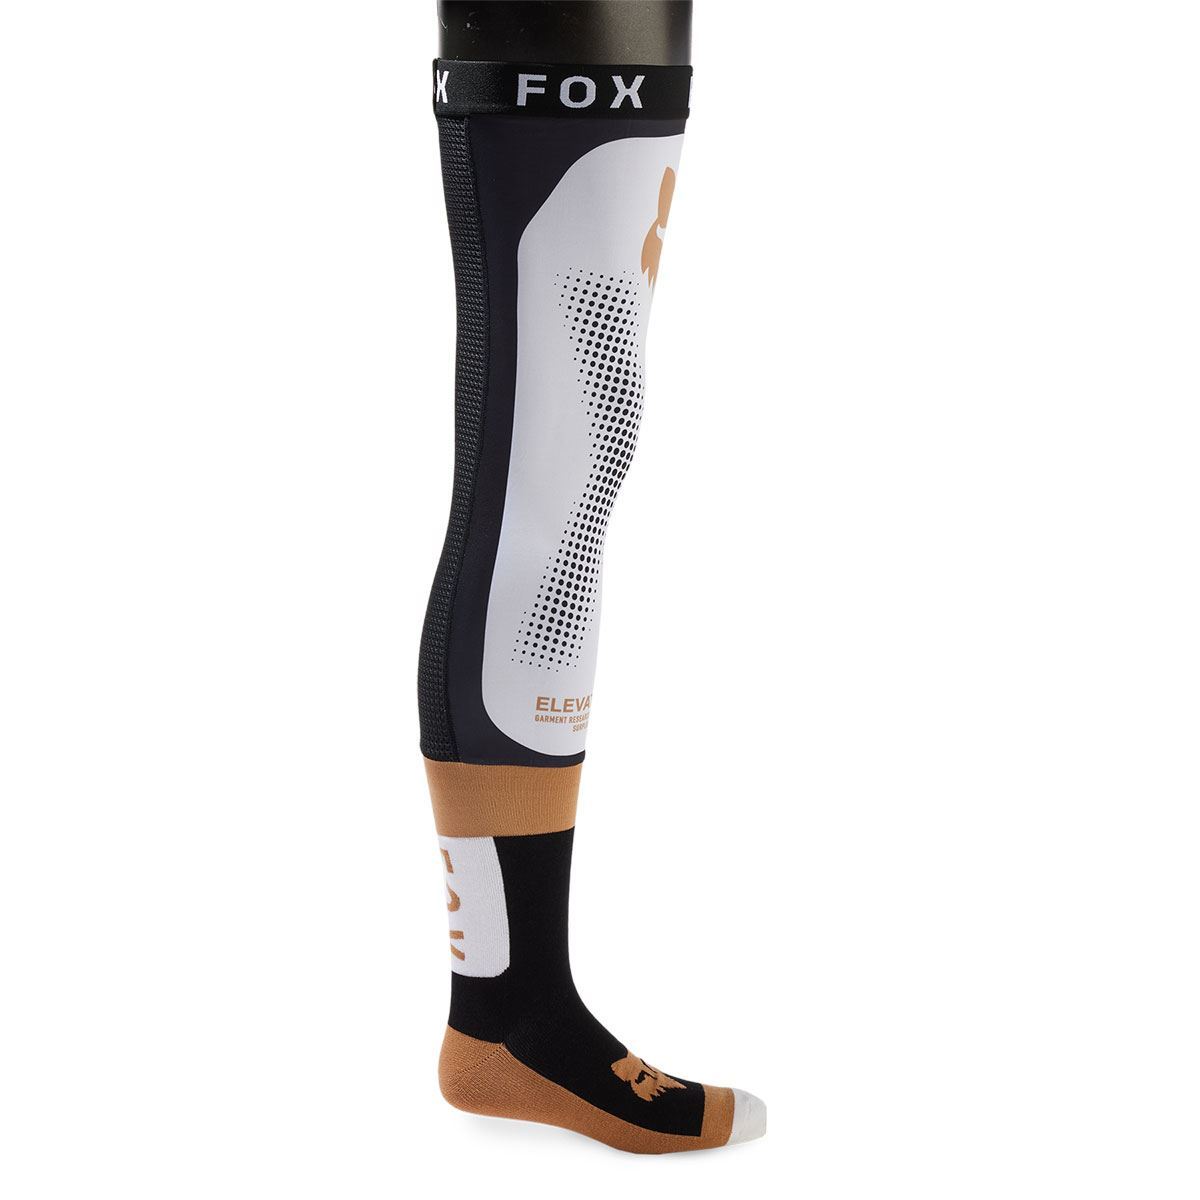 ダートフリーク FOX 31335-018-M ニーブレースソックス ブラック/ホワイト M バイク ライディング インナー 靴下 通気性_画像1